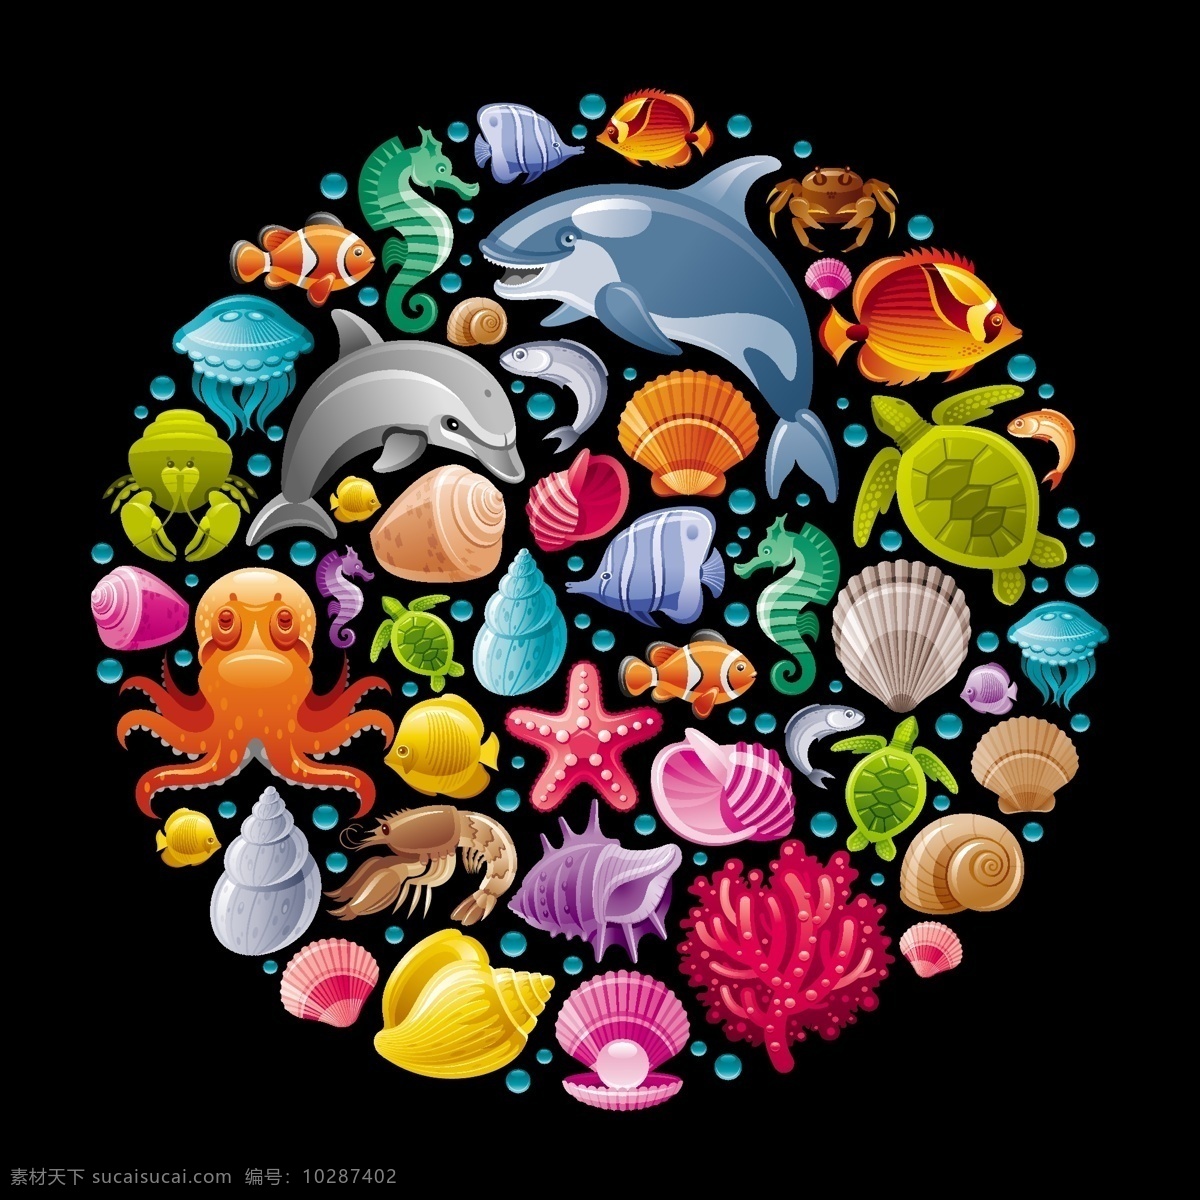 彩色 卡通 海洋生物 背景 底纹 生物 珊瑚 海报 鲸鱼 海马 热带鱼